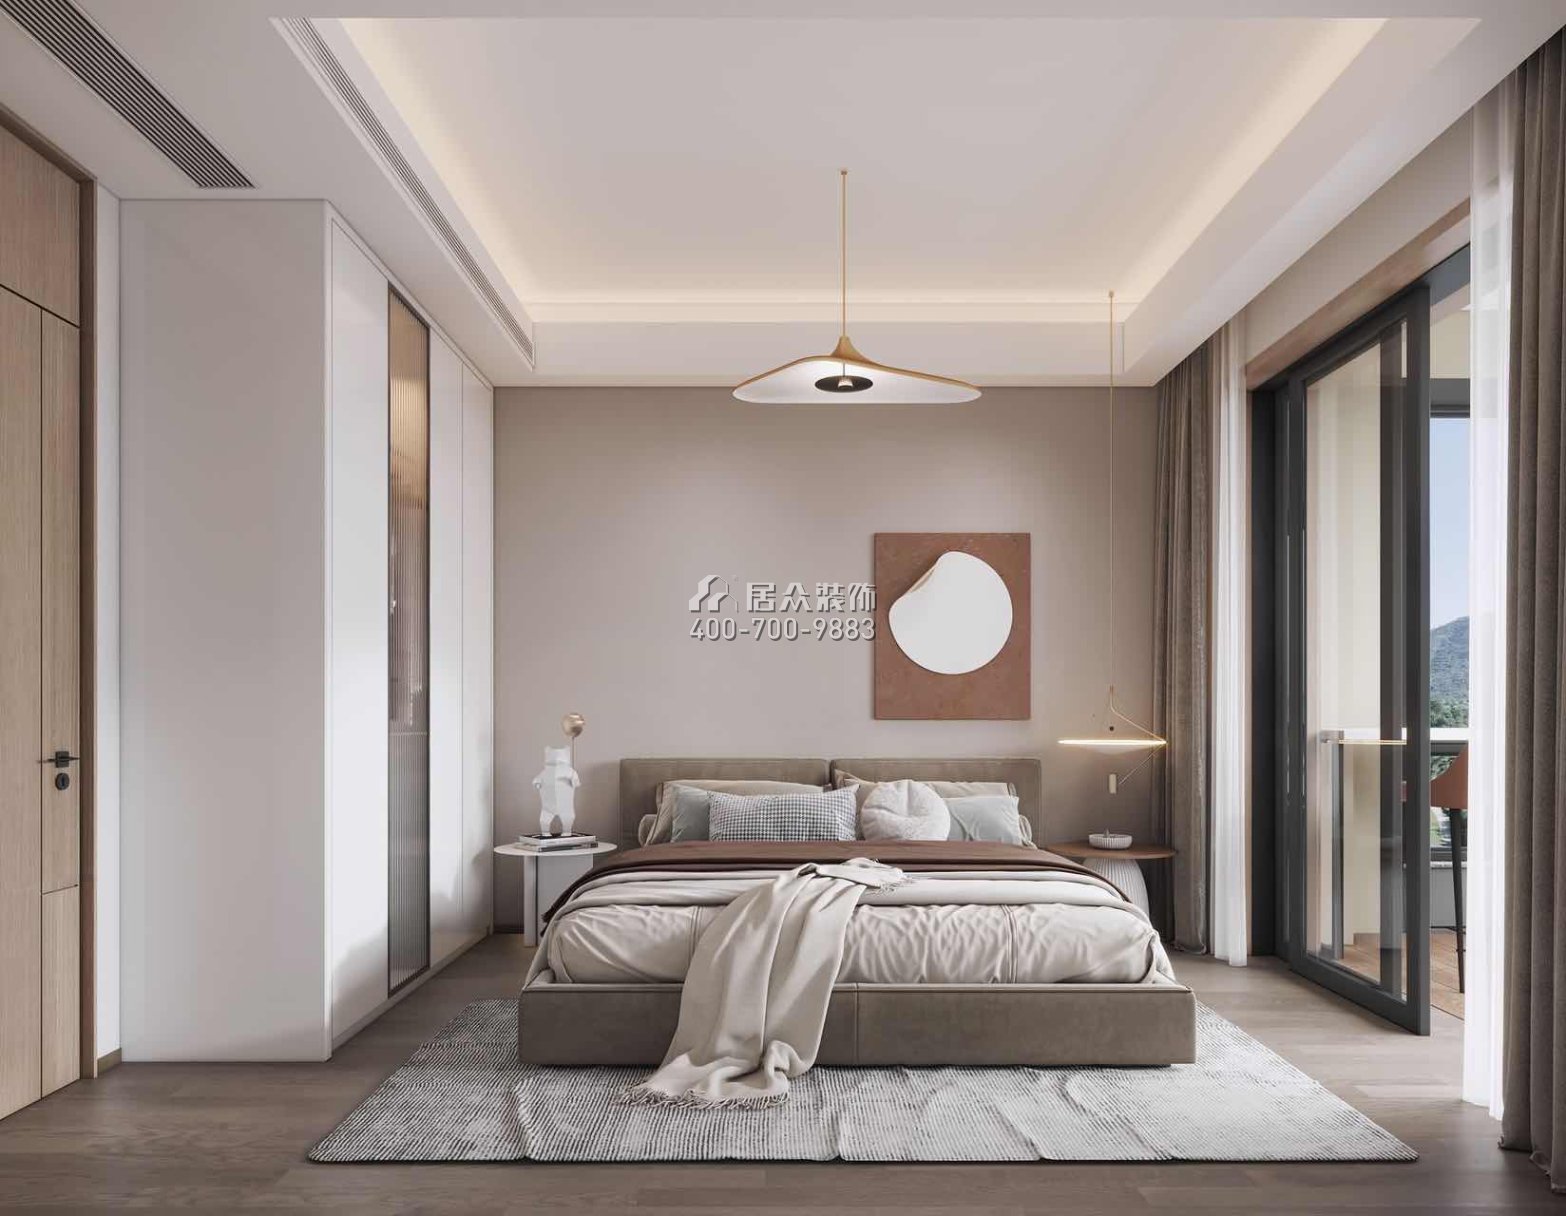 翠湖香山百合苑116平方米現代簡約風格平層戶型臥室裝修效果圖